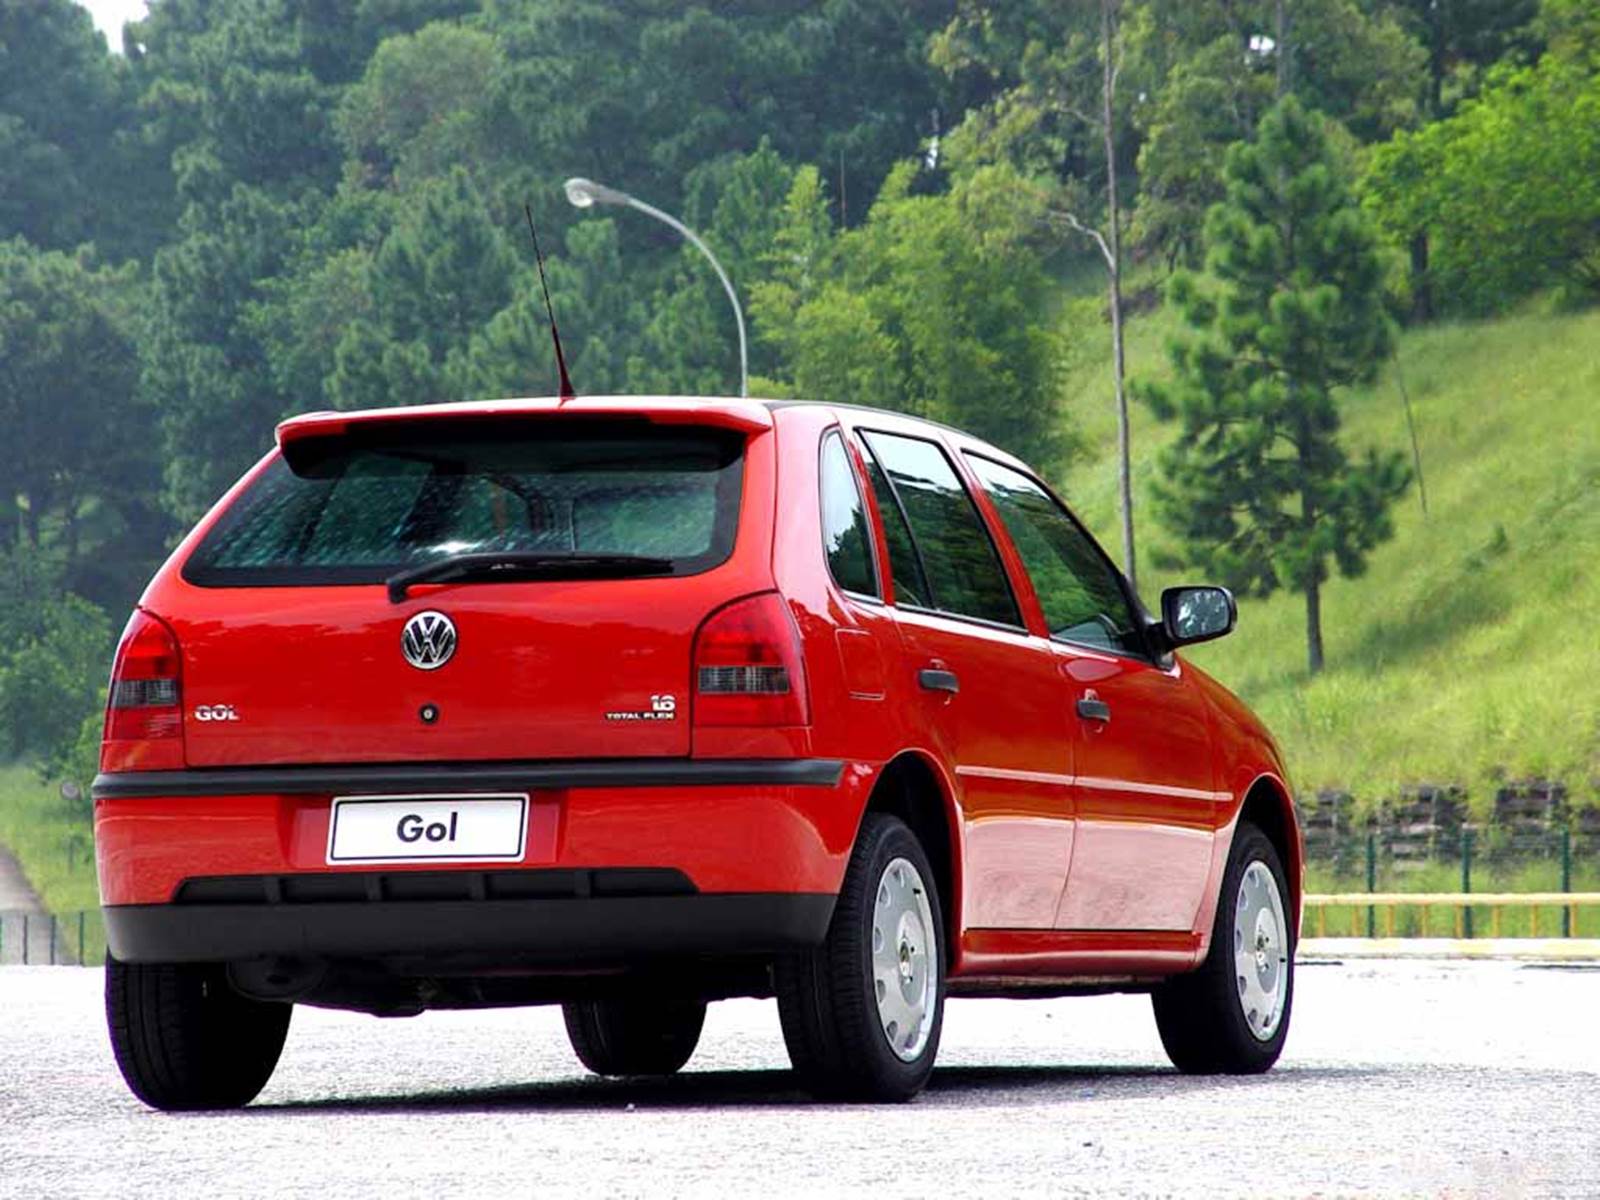 VW Gol 2004 Total-Flex